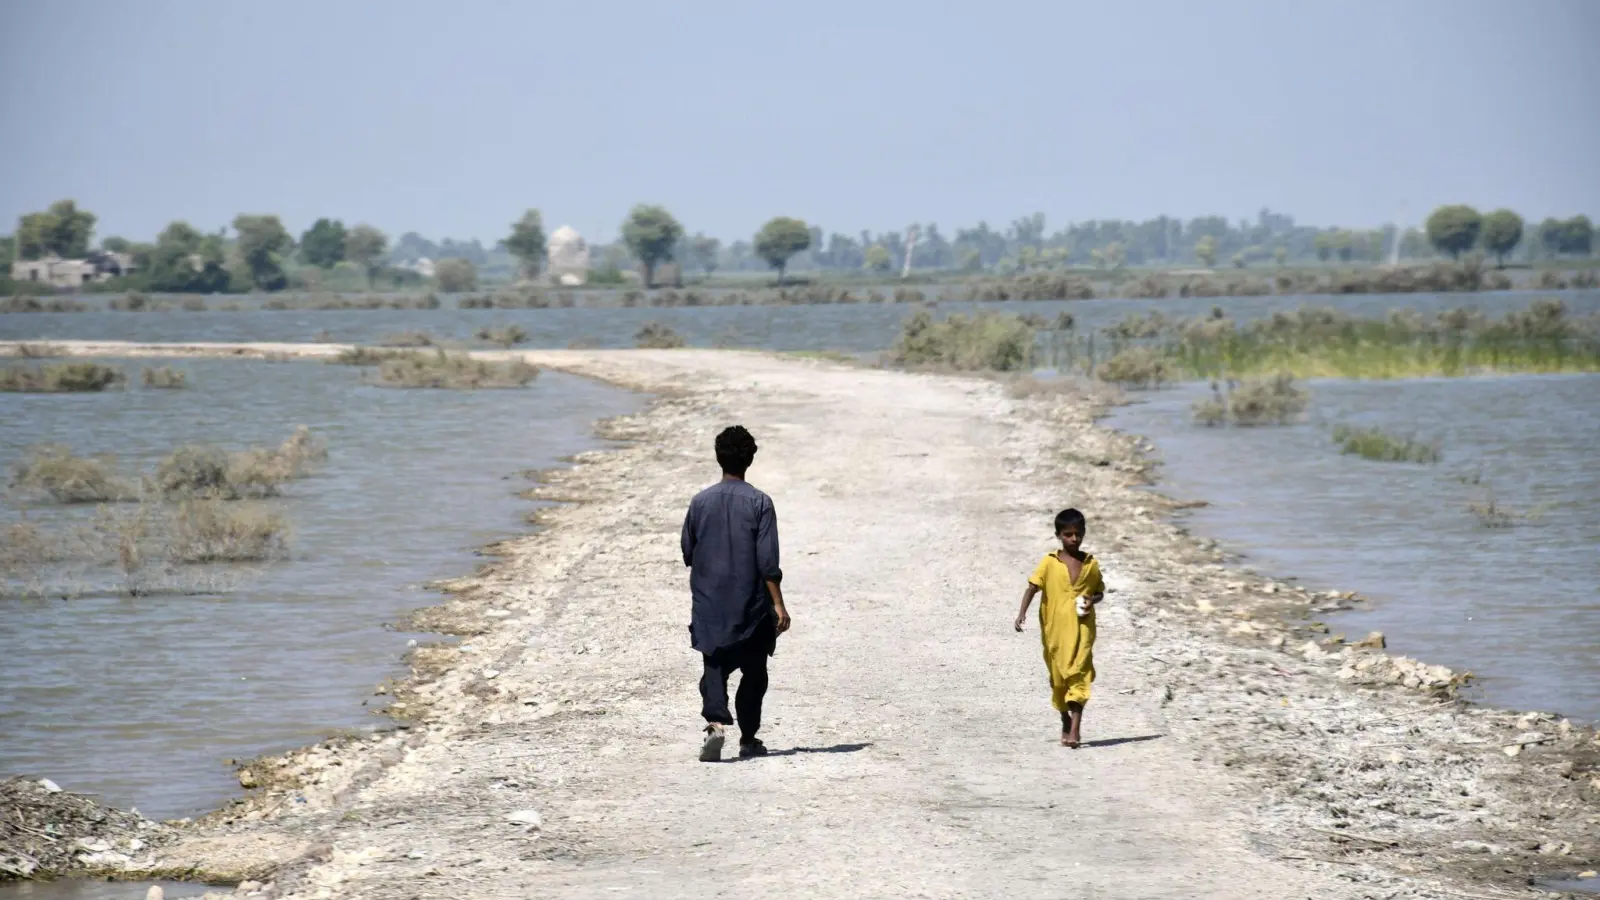 Durch die verheerenden Überschwemmungen in Pakistan stehen weite Landstriche unter Wasser. (Foto: Kyodo/dpa)